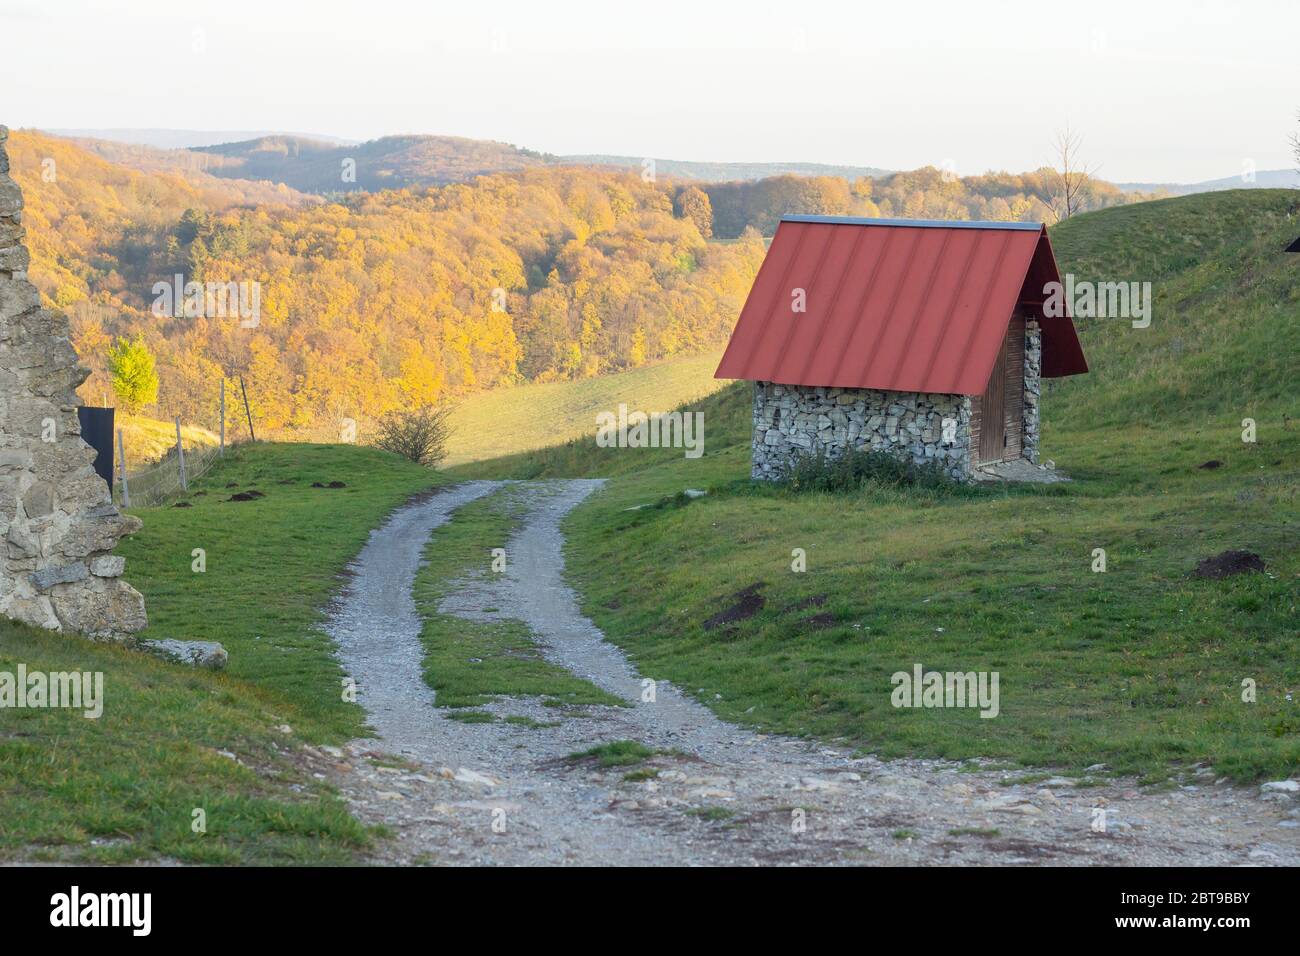 petite cabane avec toit rouge et route de terre dans un beau paysage forestier Banque D'Images